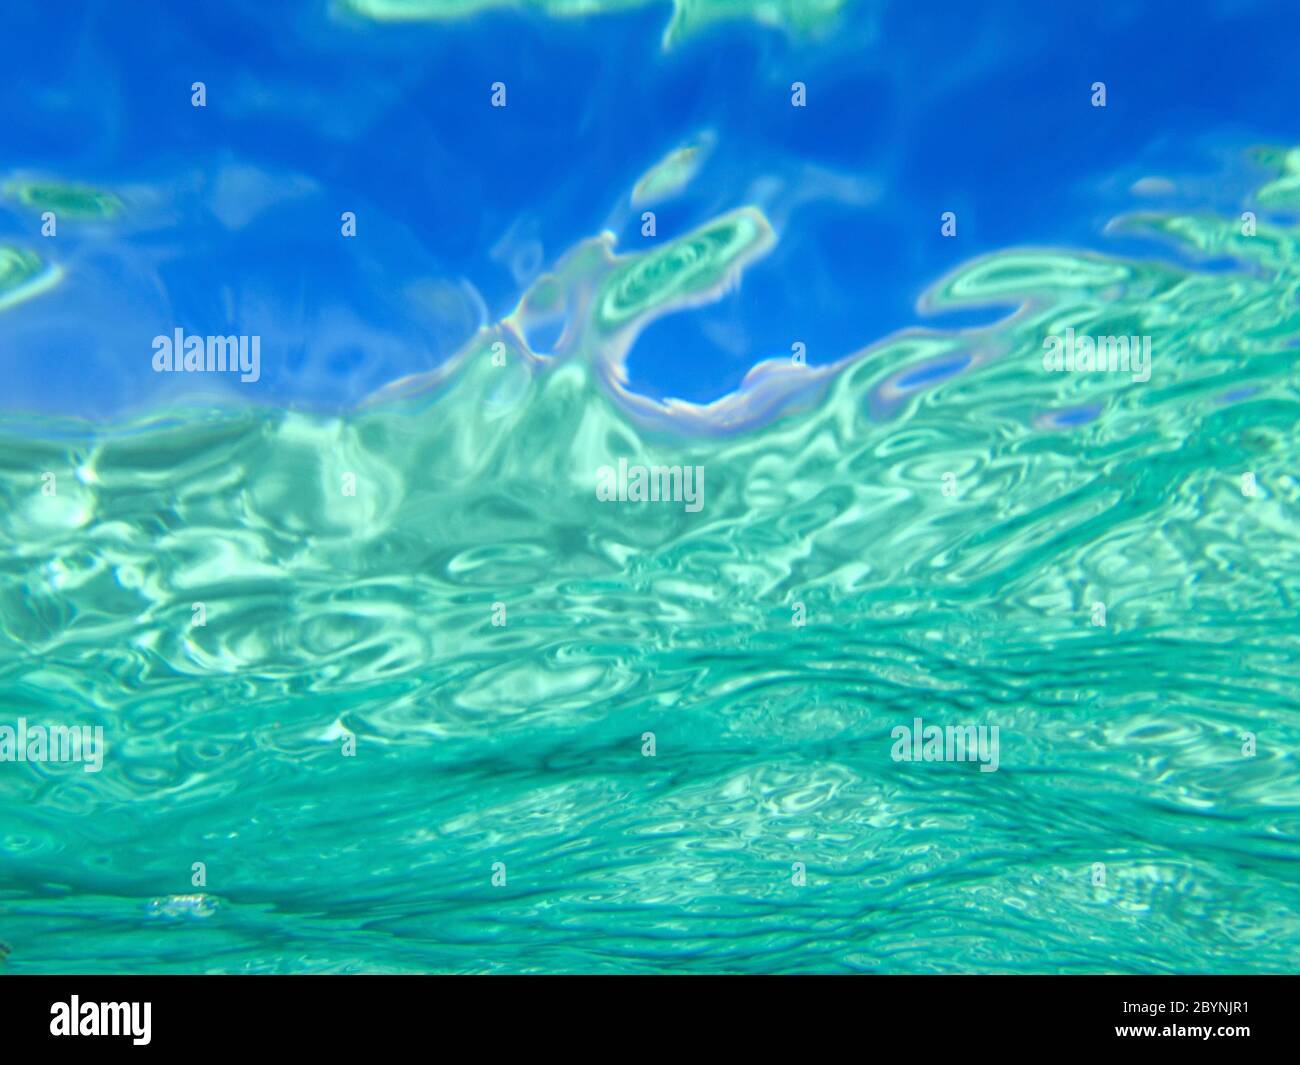 superficie dell'acqua cristallina, concetto di sfondi grafici. Immagine con orientamento orizzontale dello schermo. Foto Stock